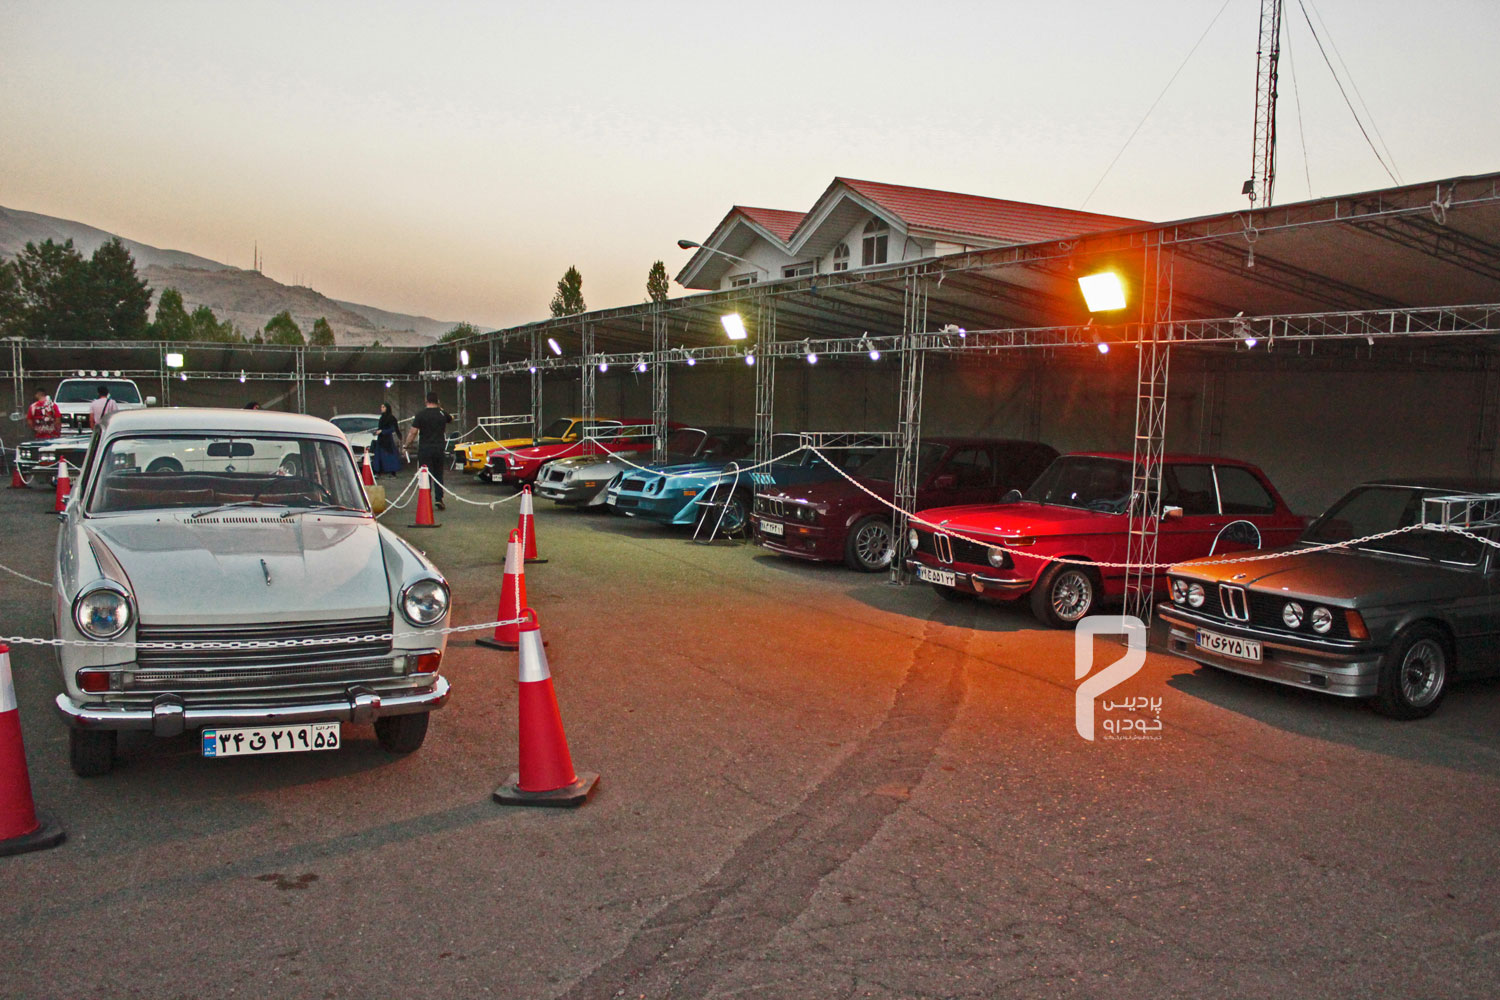 20-جشنواره خودروهای تیون شده و کلاسیک  در توچال برگزار شد